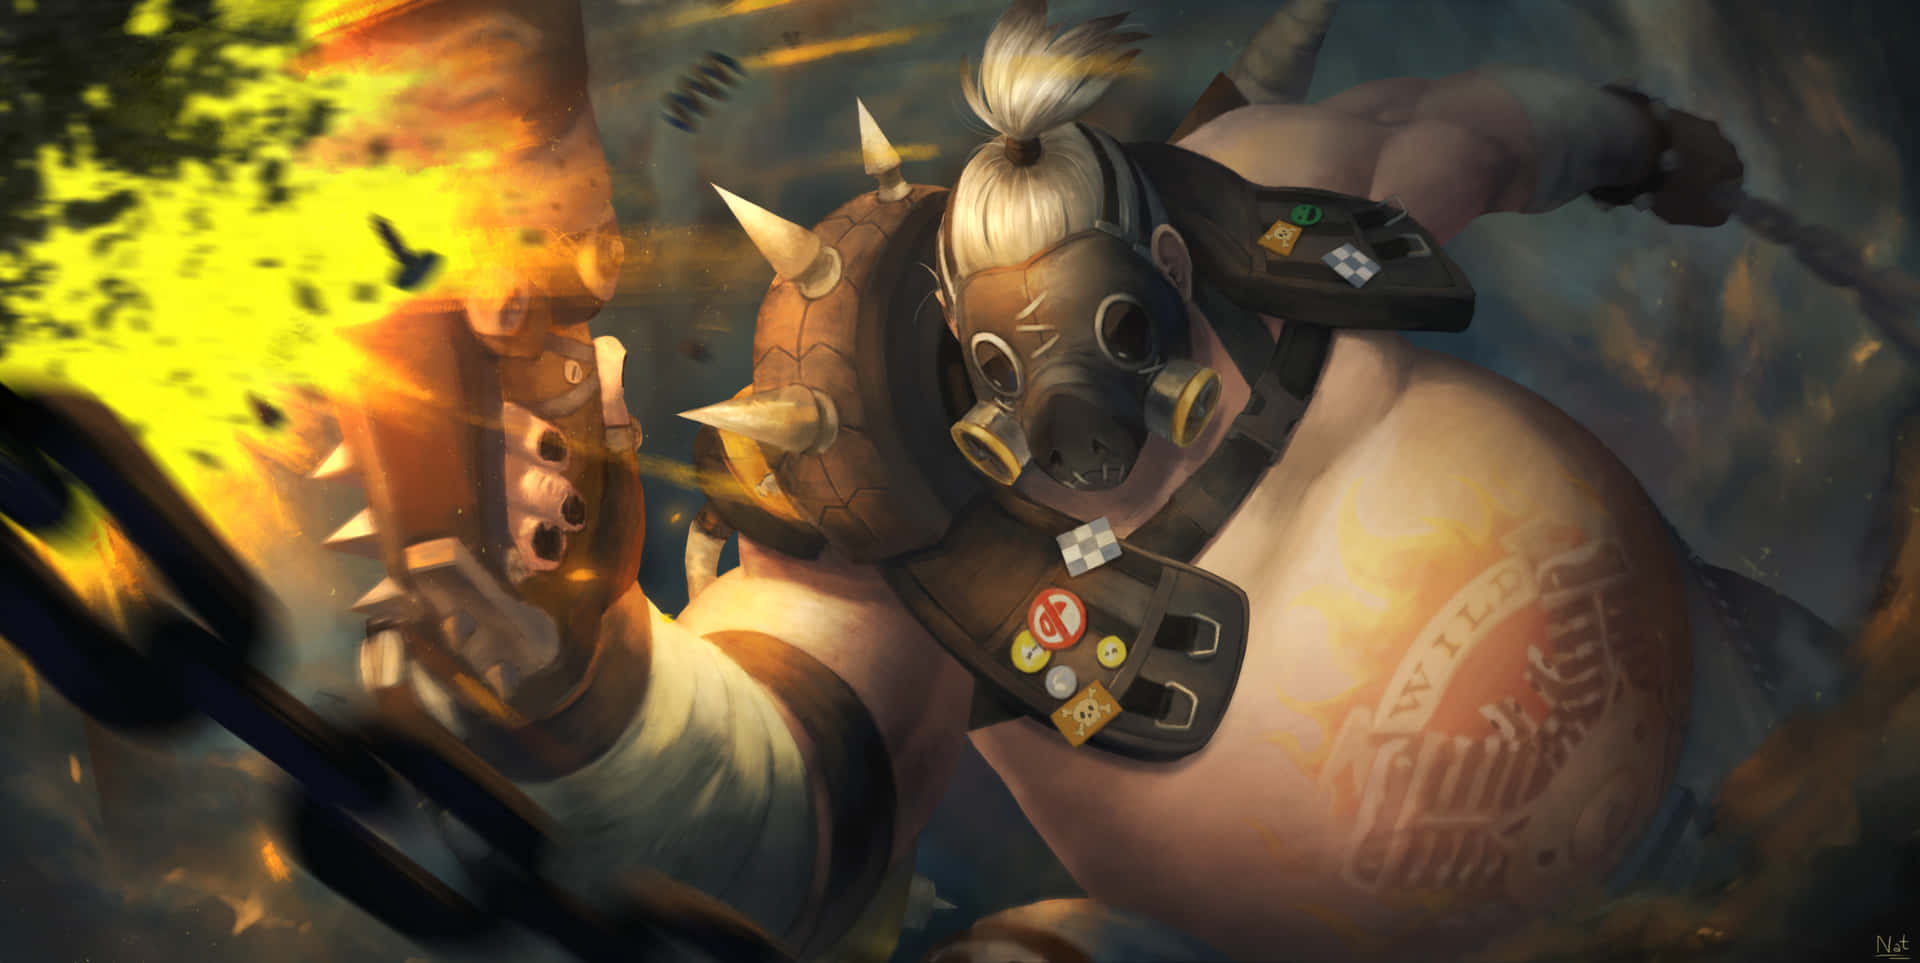 Roadhog dominates the battlefield in Overwatch. Wallpaper